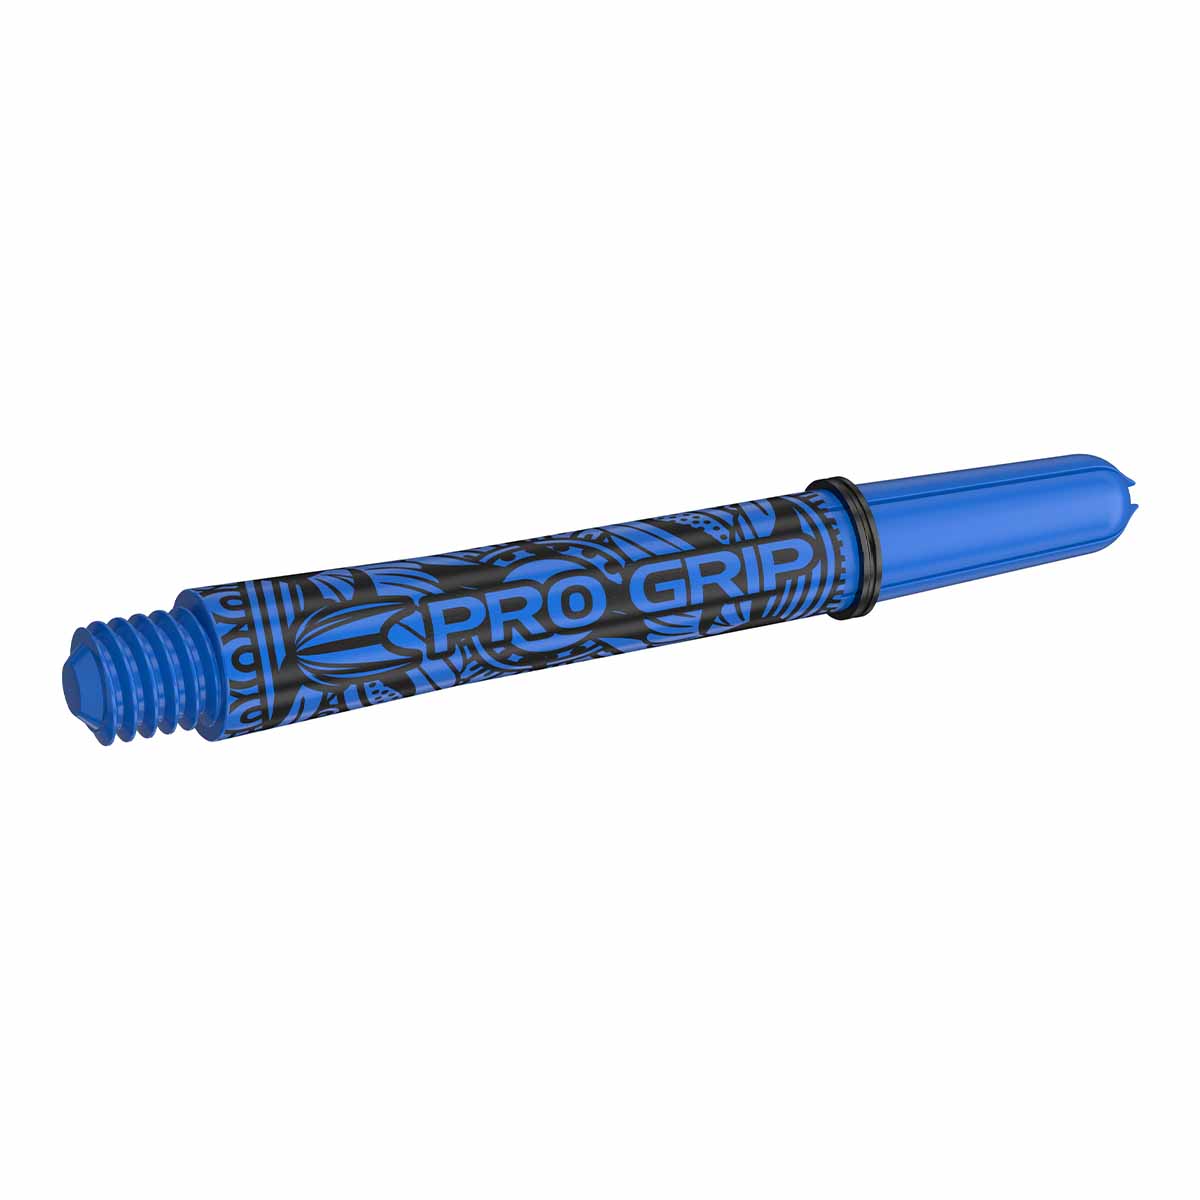 Target INK Pro Grip Shaft Blue/Blau (versch. L?ngen) Medium 48 mm von TARGET